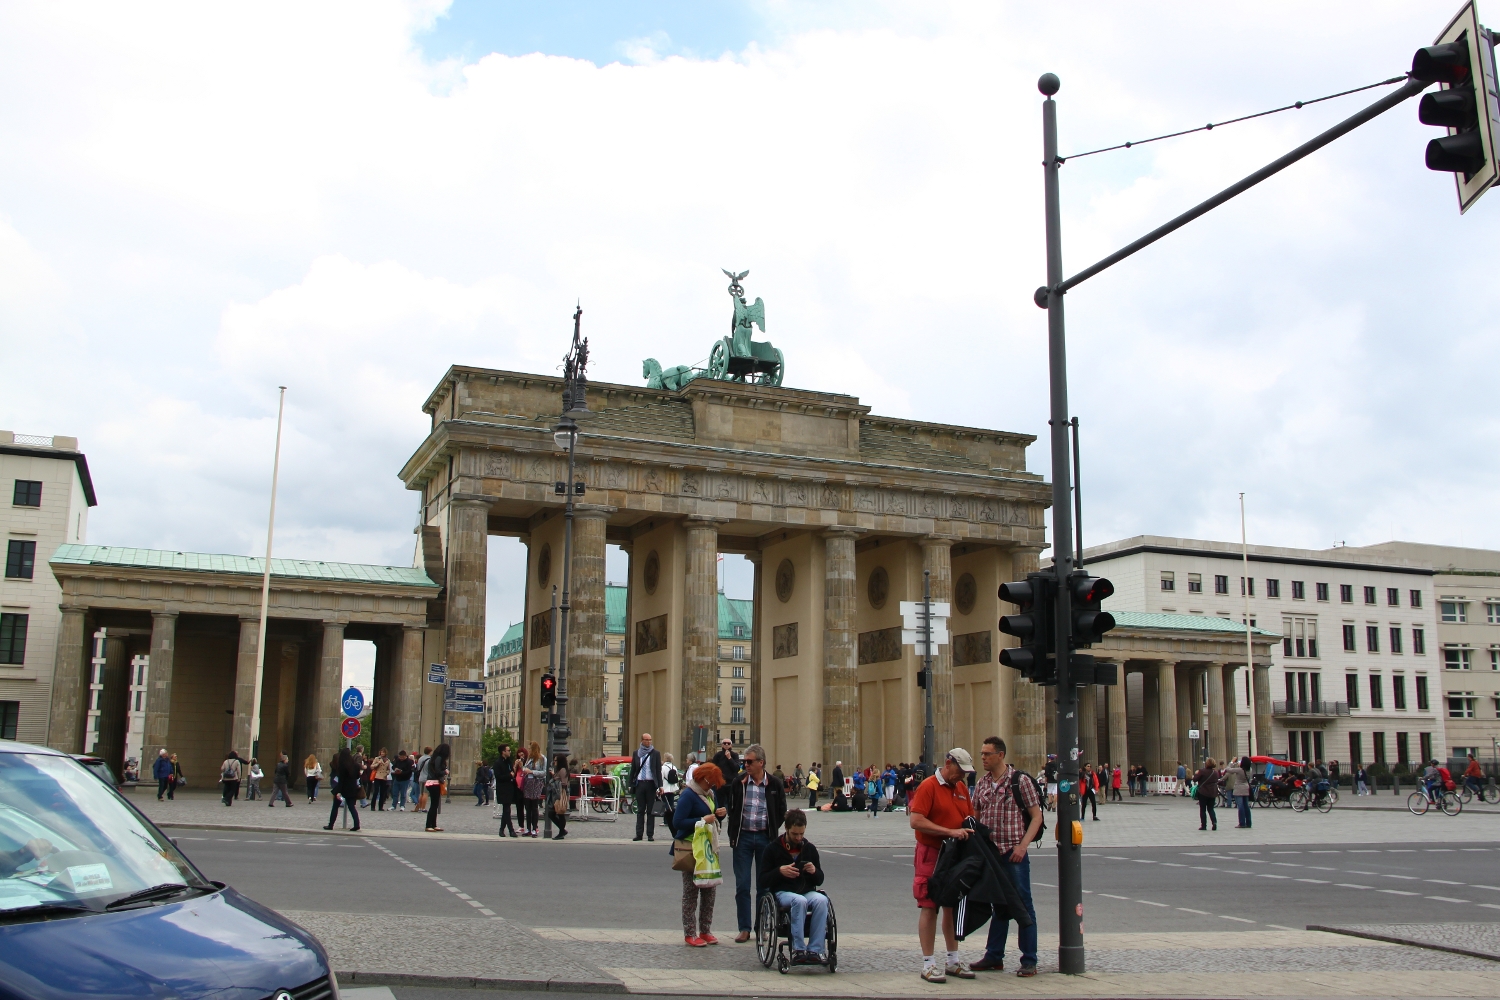 The Brandenburg Gate - back